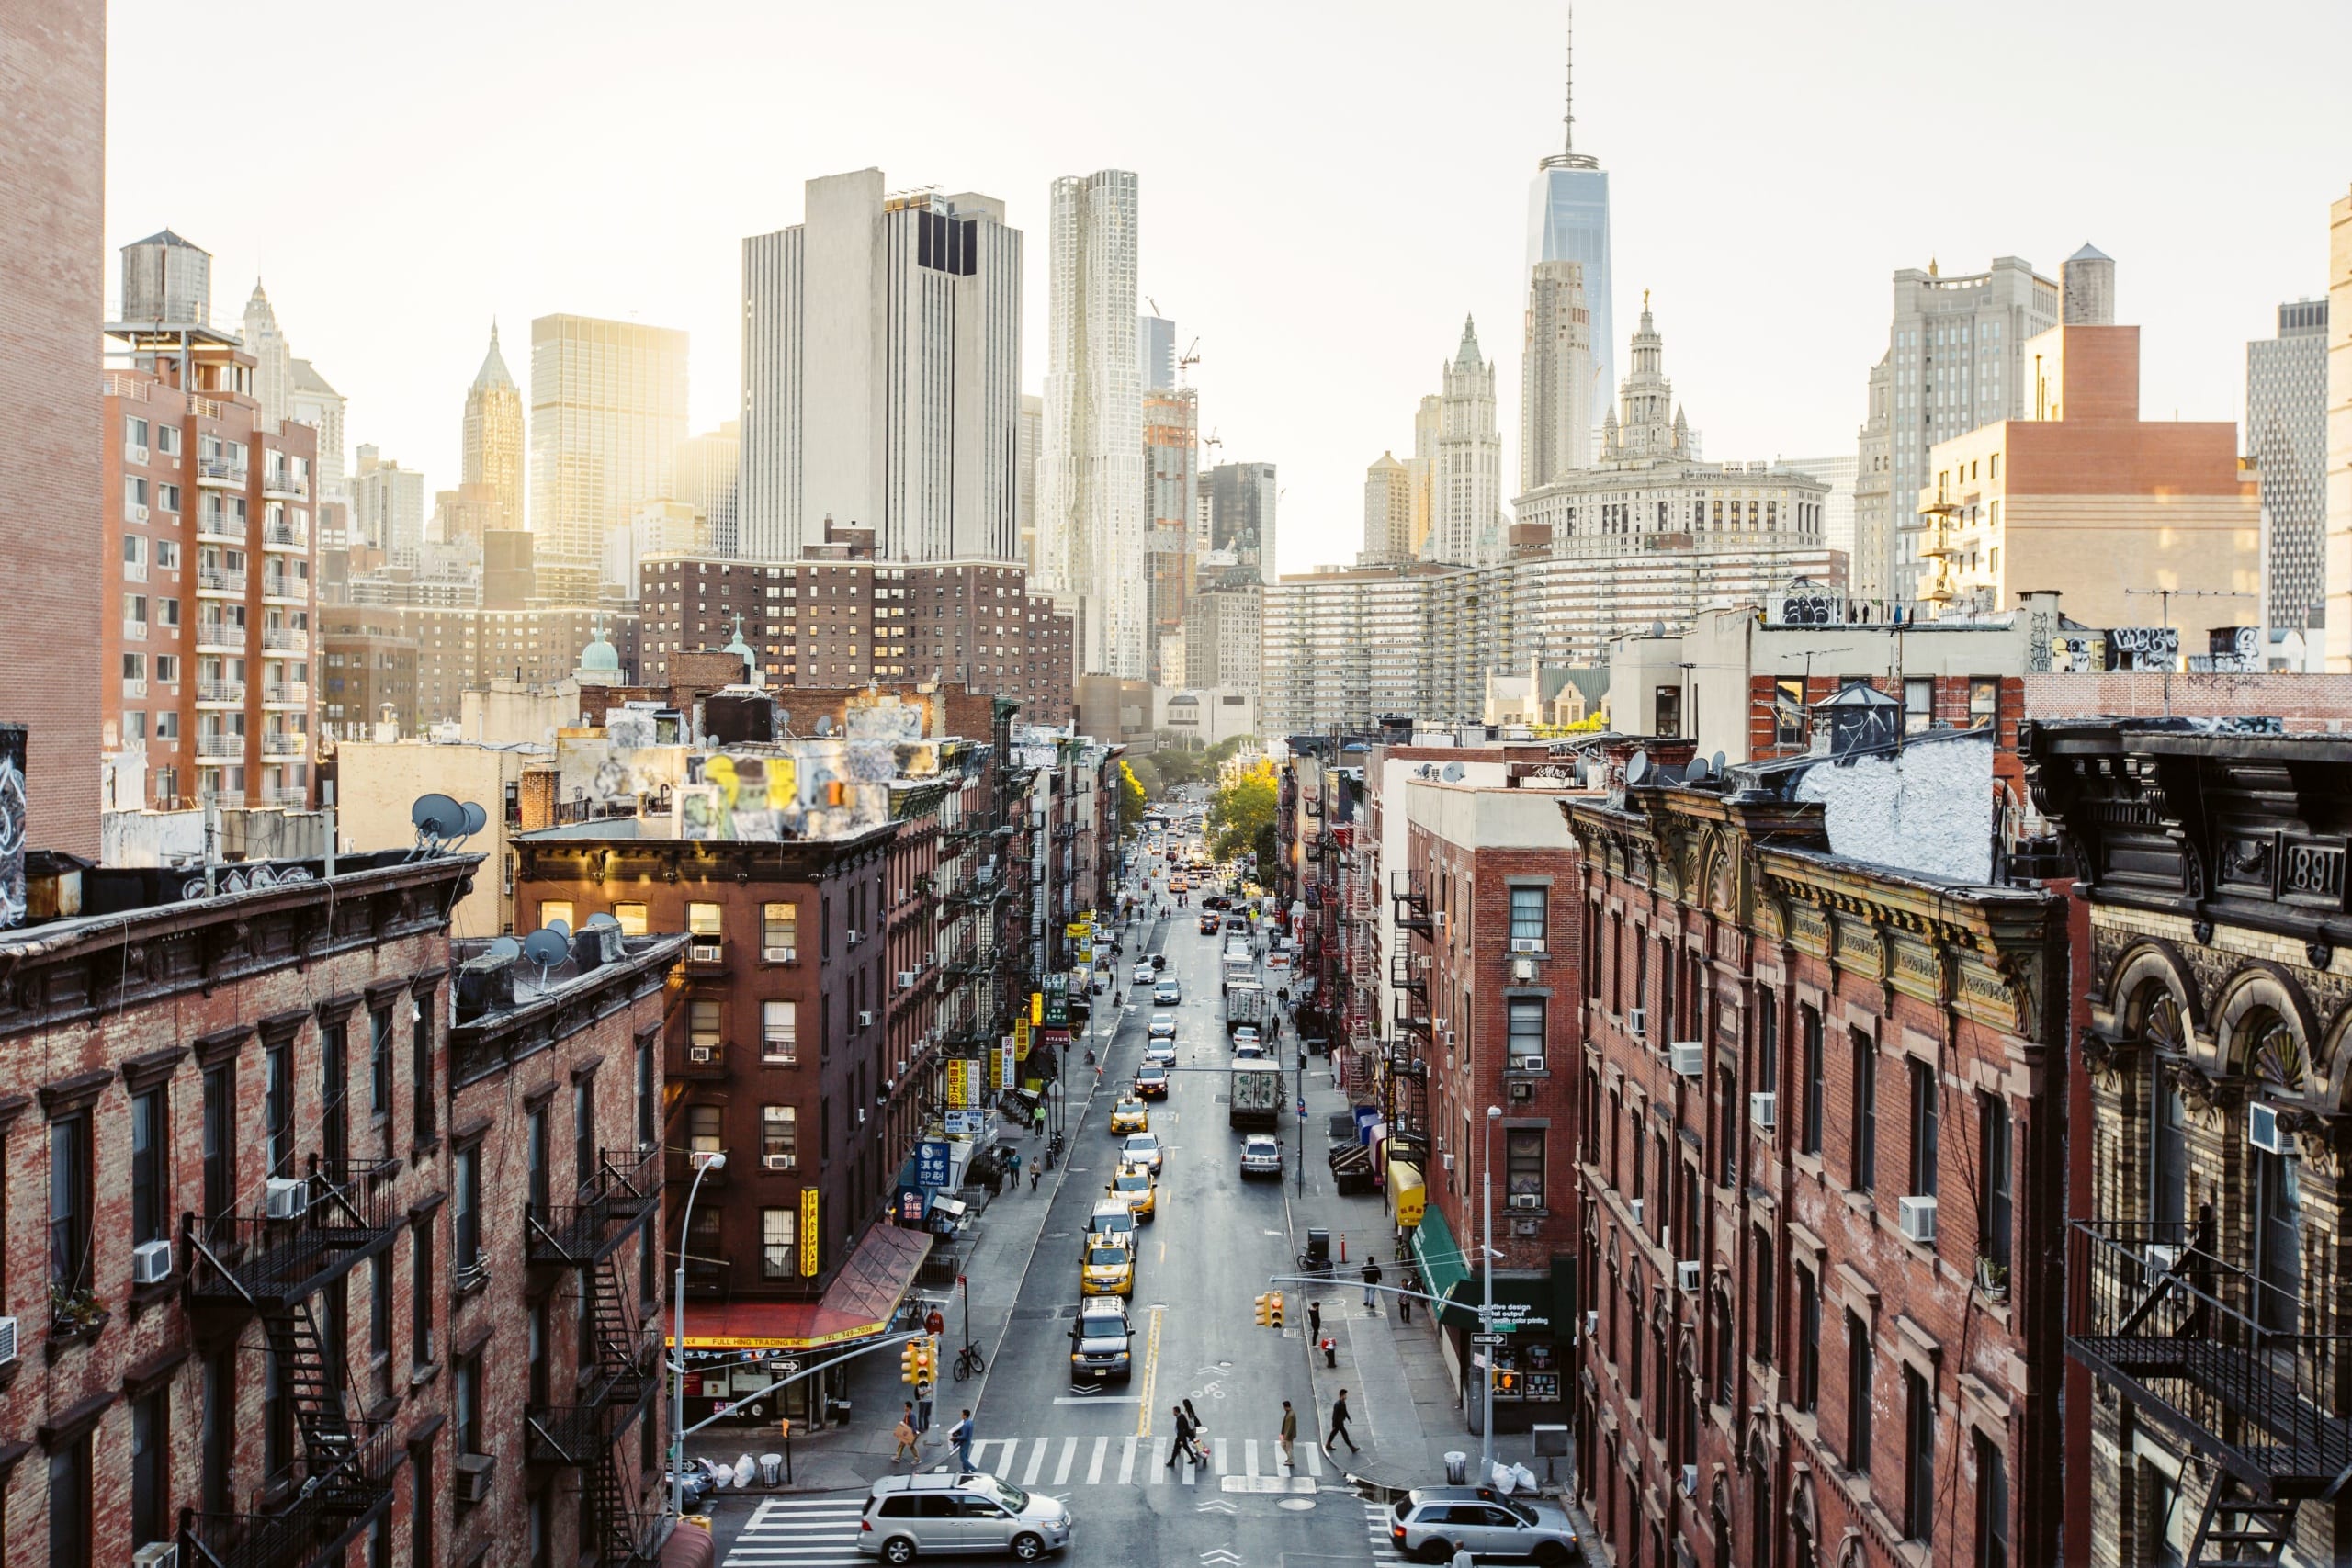 “뉴욕시, 맨해튼 상업지구의 빈 사무실을 주택으로 리모델링하여 주택 부족 문제 해결”